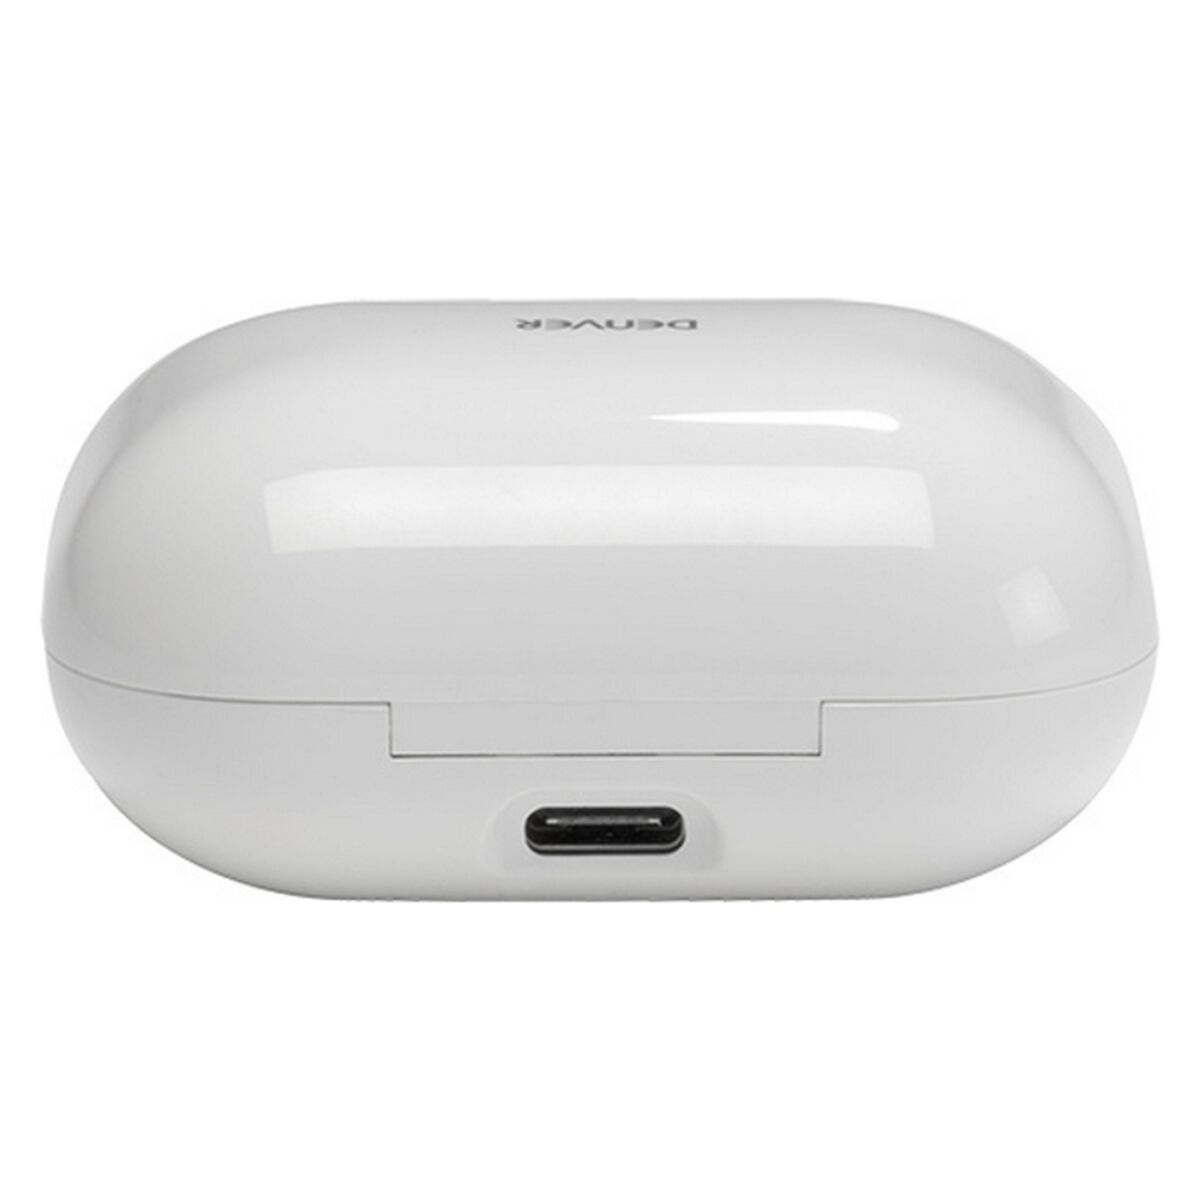 Denver Electronics Bluetooth-Headset 111191120210 Weiß